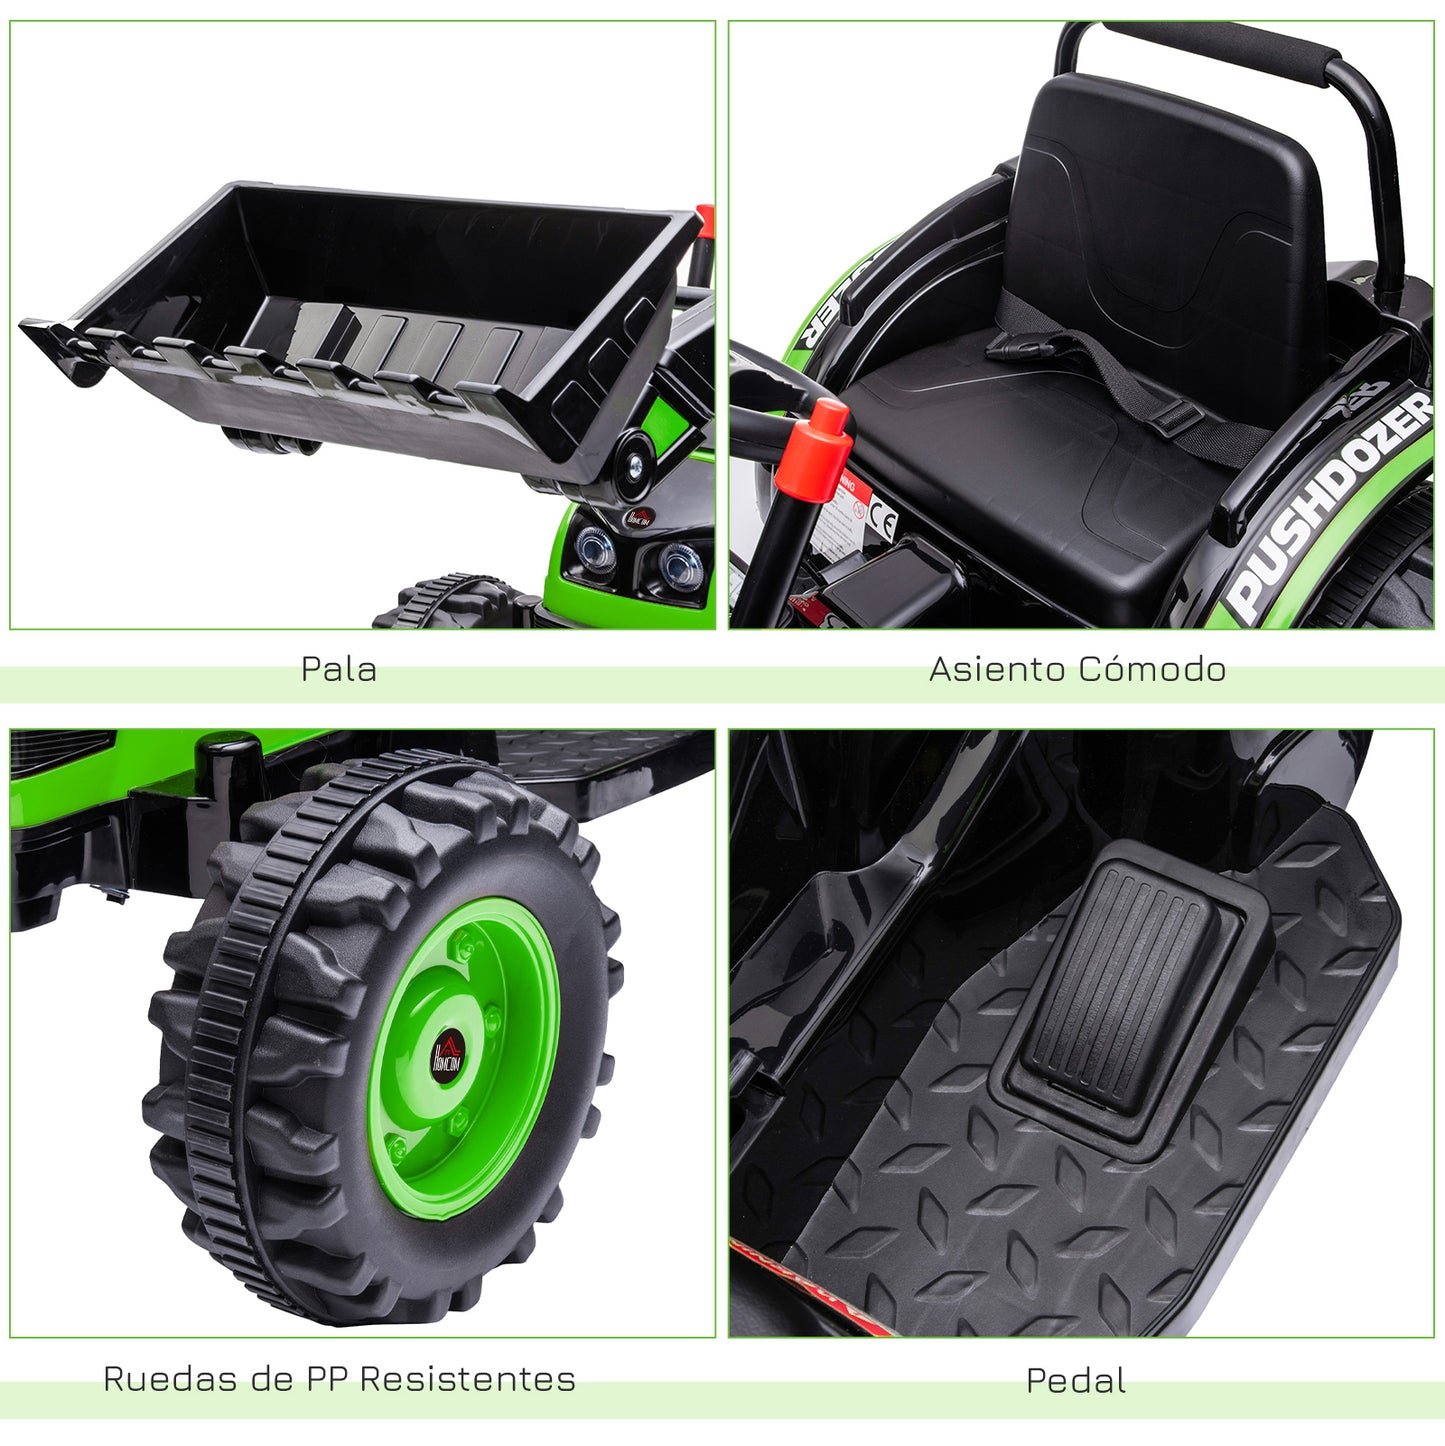 HOMCOM Tractor Excavadora Eléctrico para Niños de +3 Años Vehículo Infantil con Batería 6V Pala Música y Luces Velocidad de 2 Niveles 132x62x65 cm Negro y Verde